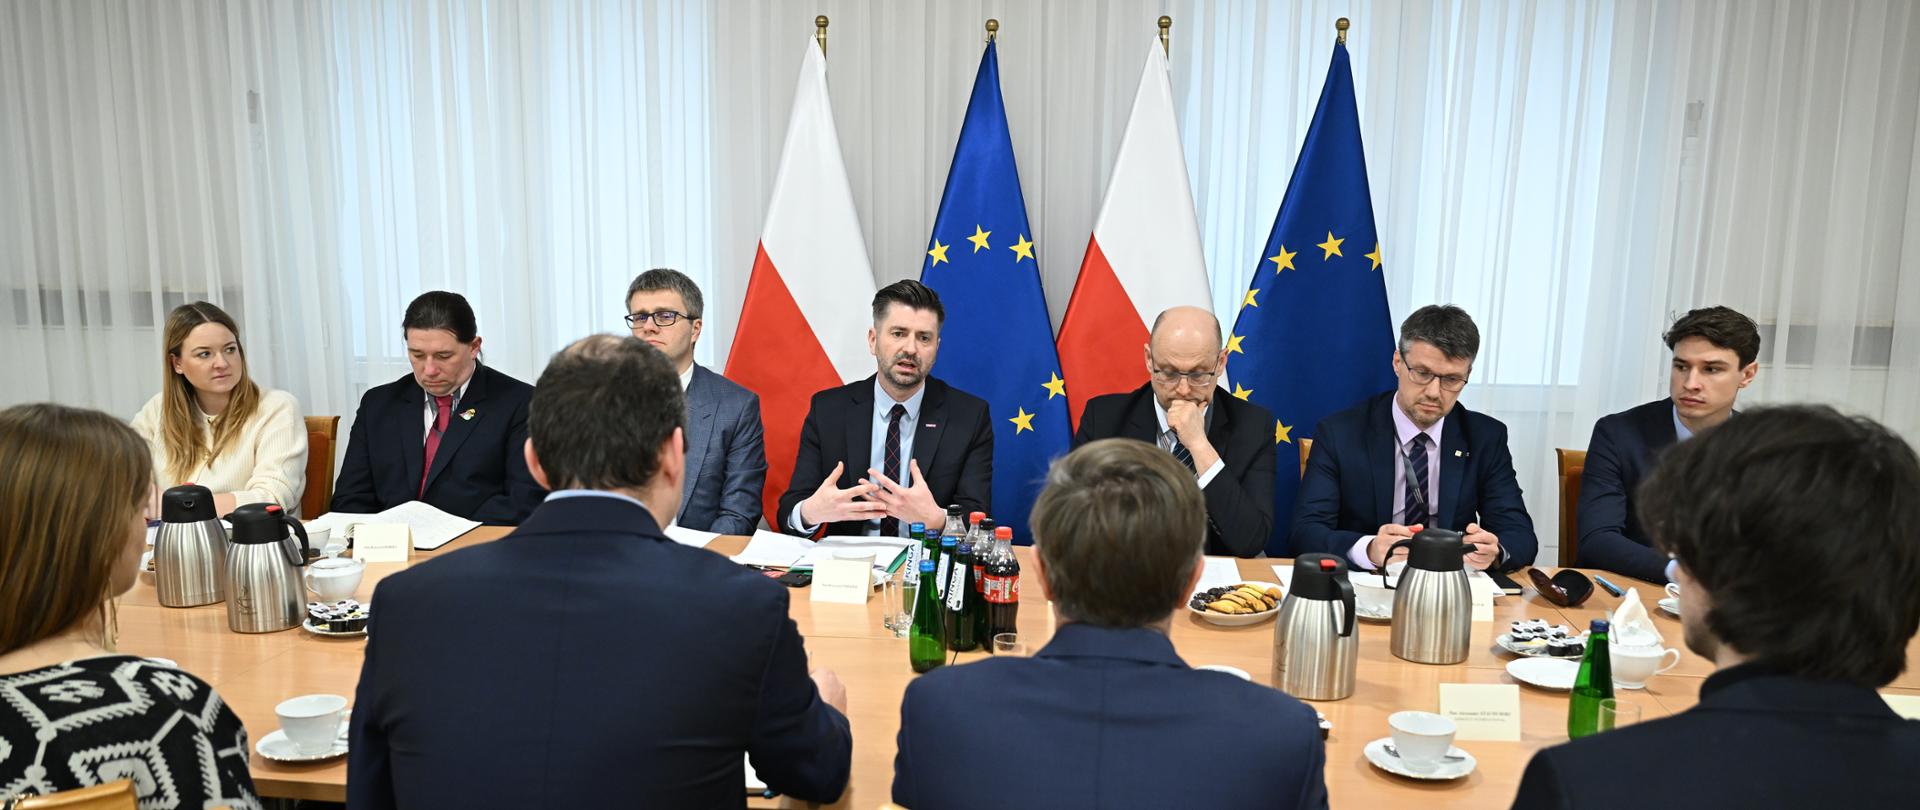 Spotkanie wiceministra Krzysztofa Śmiszka z osobami, które dbają o przestrzeganie praw człowieka przy granicy polsko-białoruskiej